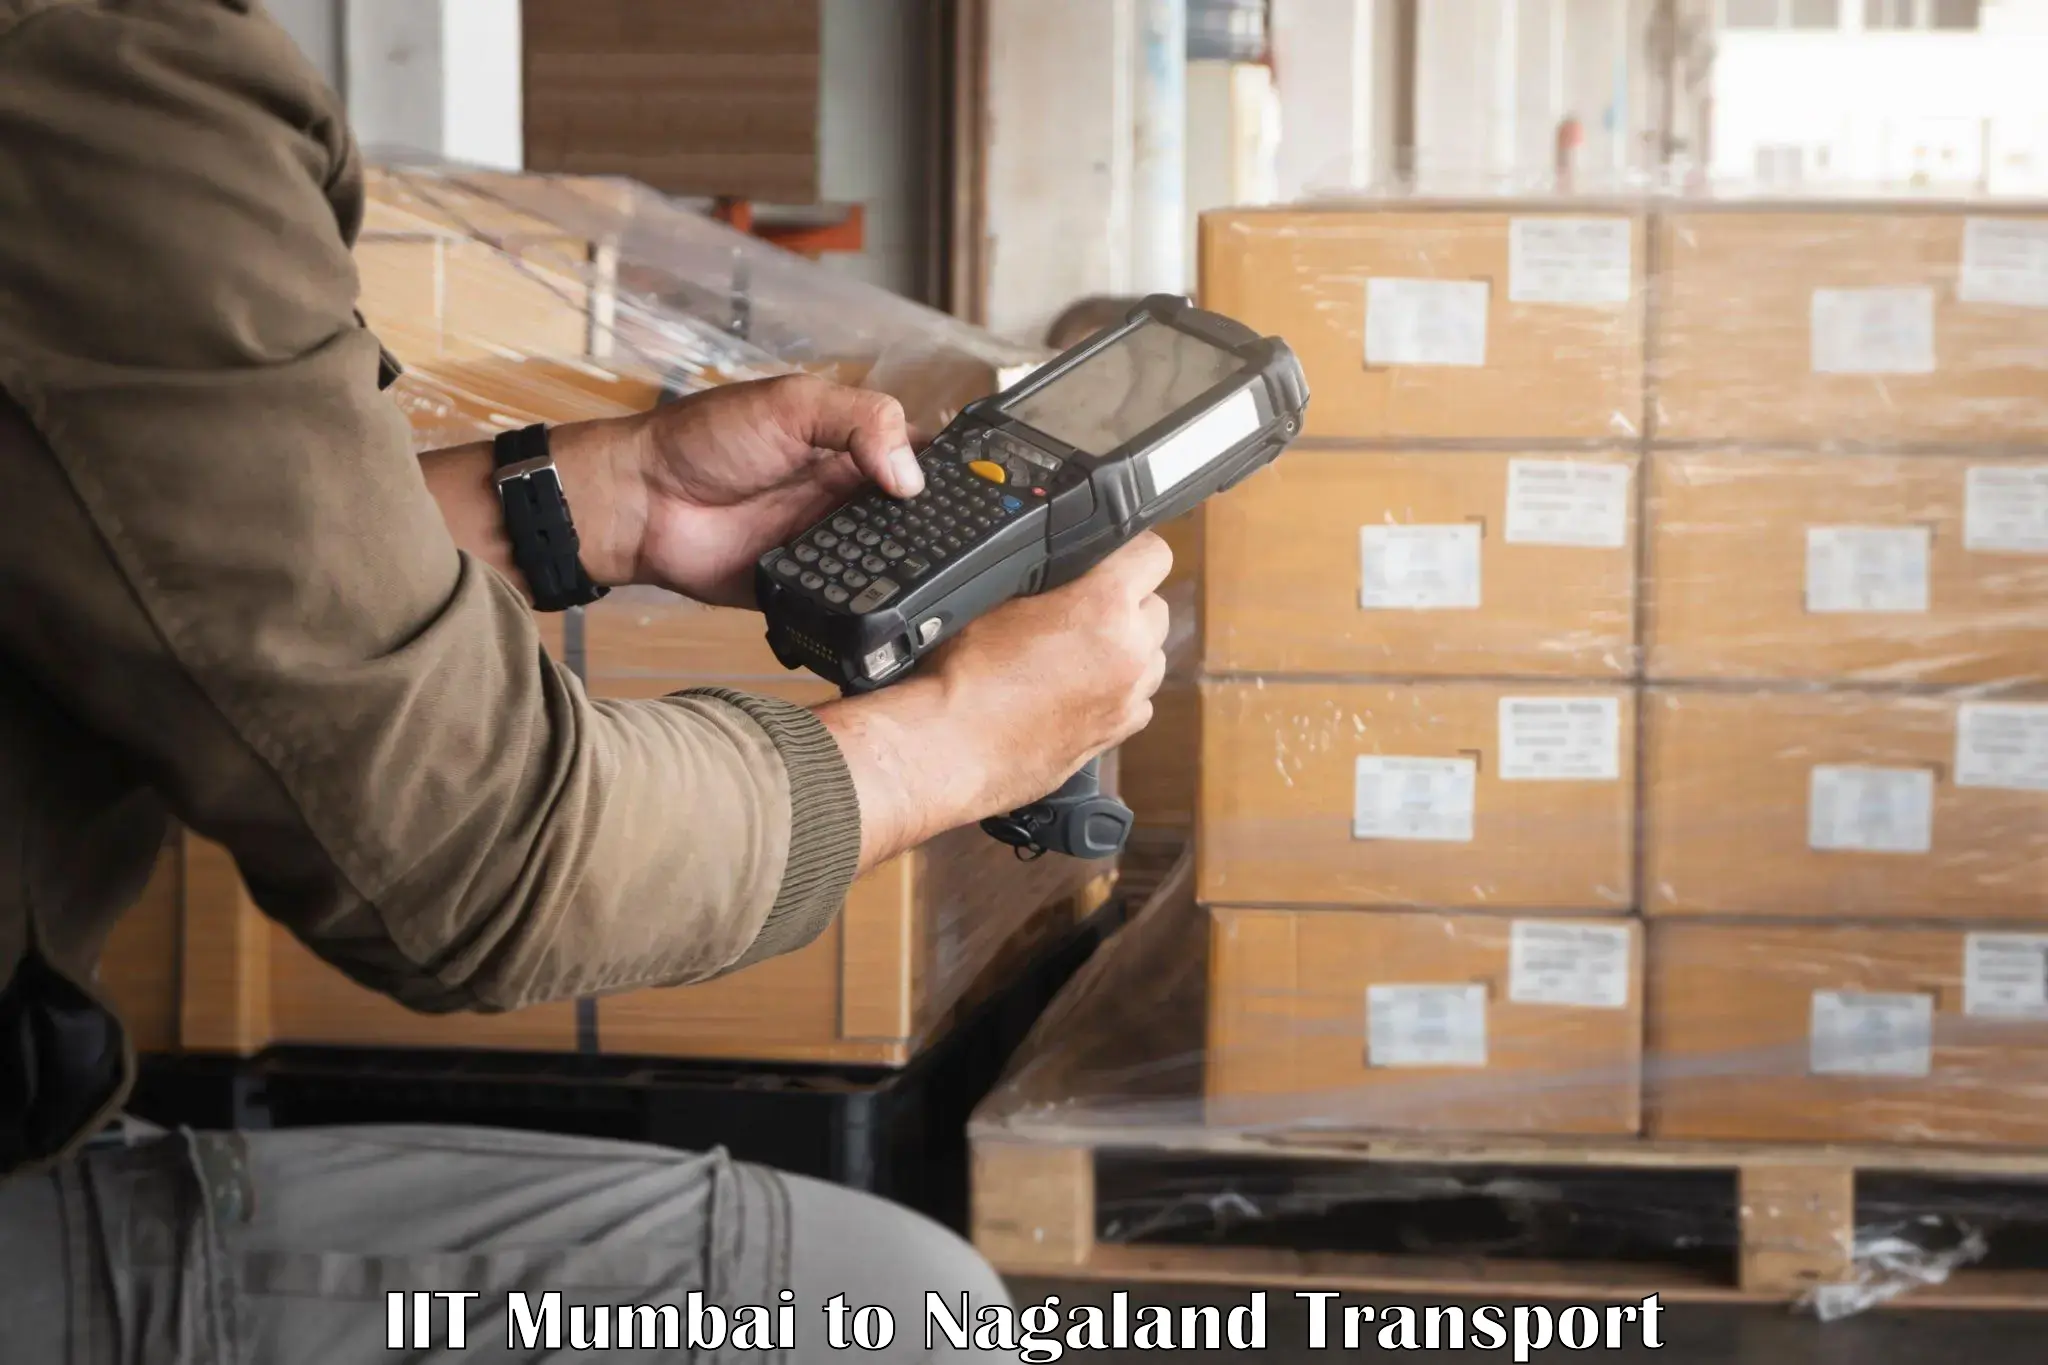 Pick up transport service IIT Mumbai to Nagaland